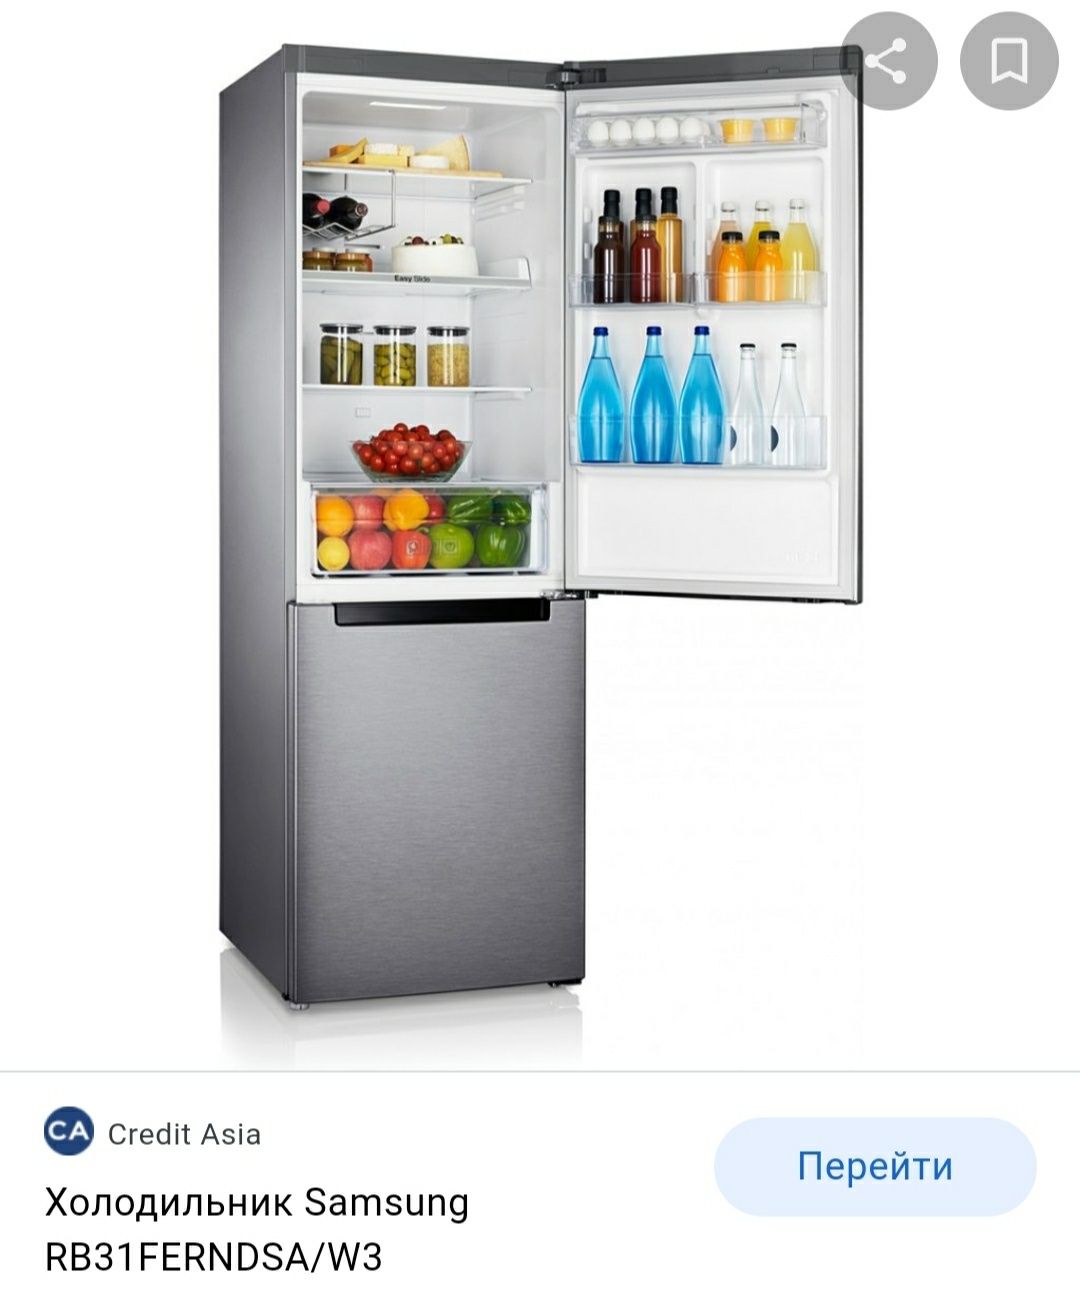 Холодильник Samsung RB31FERNDSAW3 Доставка по городу бесплатно